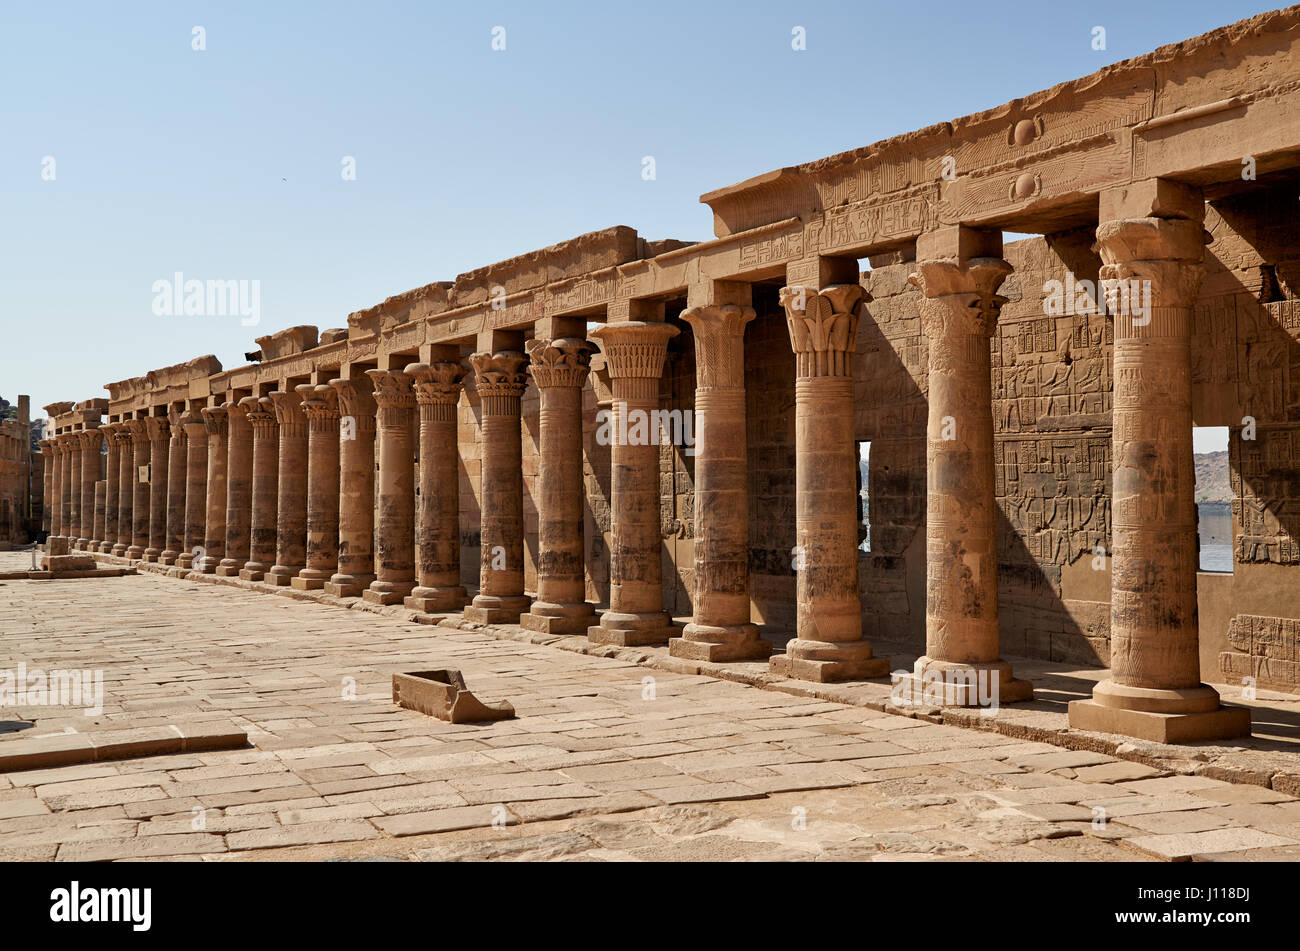 En colonnade du temple ptolémaïque de Philae, Assouan, Egypte, Afrique du Sud Banque D'Images